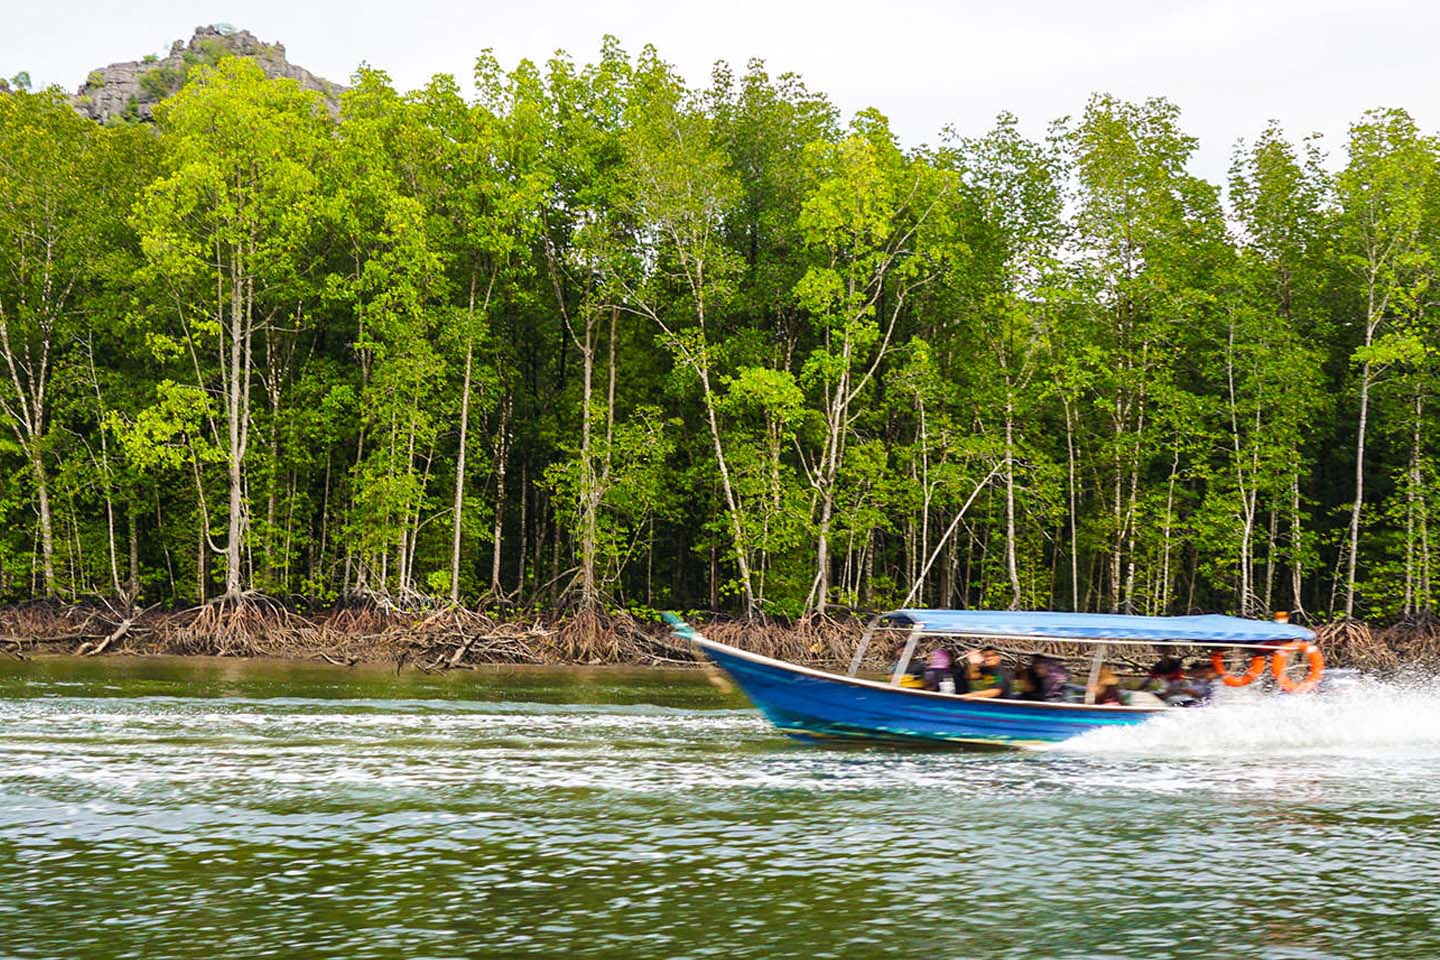 Bằng thuyền, khám phá khu bảo tồn rừng ngập mặn và khám phá hệ sinh thái, hệ thực vật, quần thể chim di cư và chức năng như một vườn ươm cho sinh vật biển trẻ. Sau đó, để có một ngày vui vẻ, hãy ghé thăm trang trại cá nổi, Hang Dơi, Hang Cá sấu, tham gia cho đại bàng ăn và kết thúc một ngày với khung cảnh tuyệt đẹp của Biển Andaman.  Ngoài ra, bạn có thể quyết định tham gia một chuyến tham quan bằng thuyền kayak đến một trang trại cá và khu vực rừng ngập mặn gần đó. Lên thuyền kayak và chèo qua khu rừng ngập mặn để xem hệ thực vật và động vật bản địa, bao gồm đại bàng biển và diều, bói cá, diệc, cá thòi lòi, cua cáy và kỳ đà. Hướng dẫn chèo 